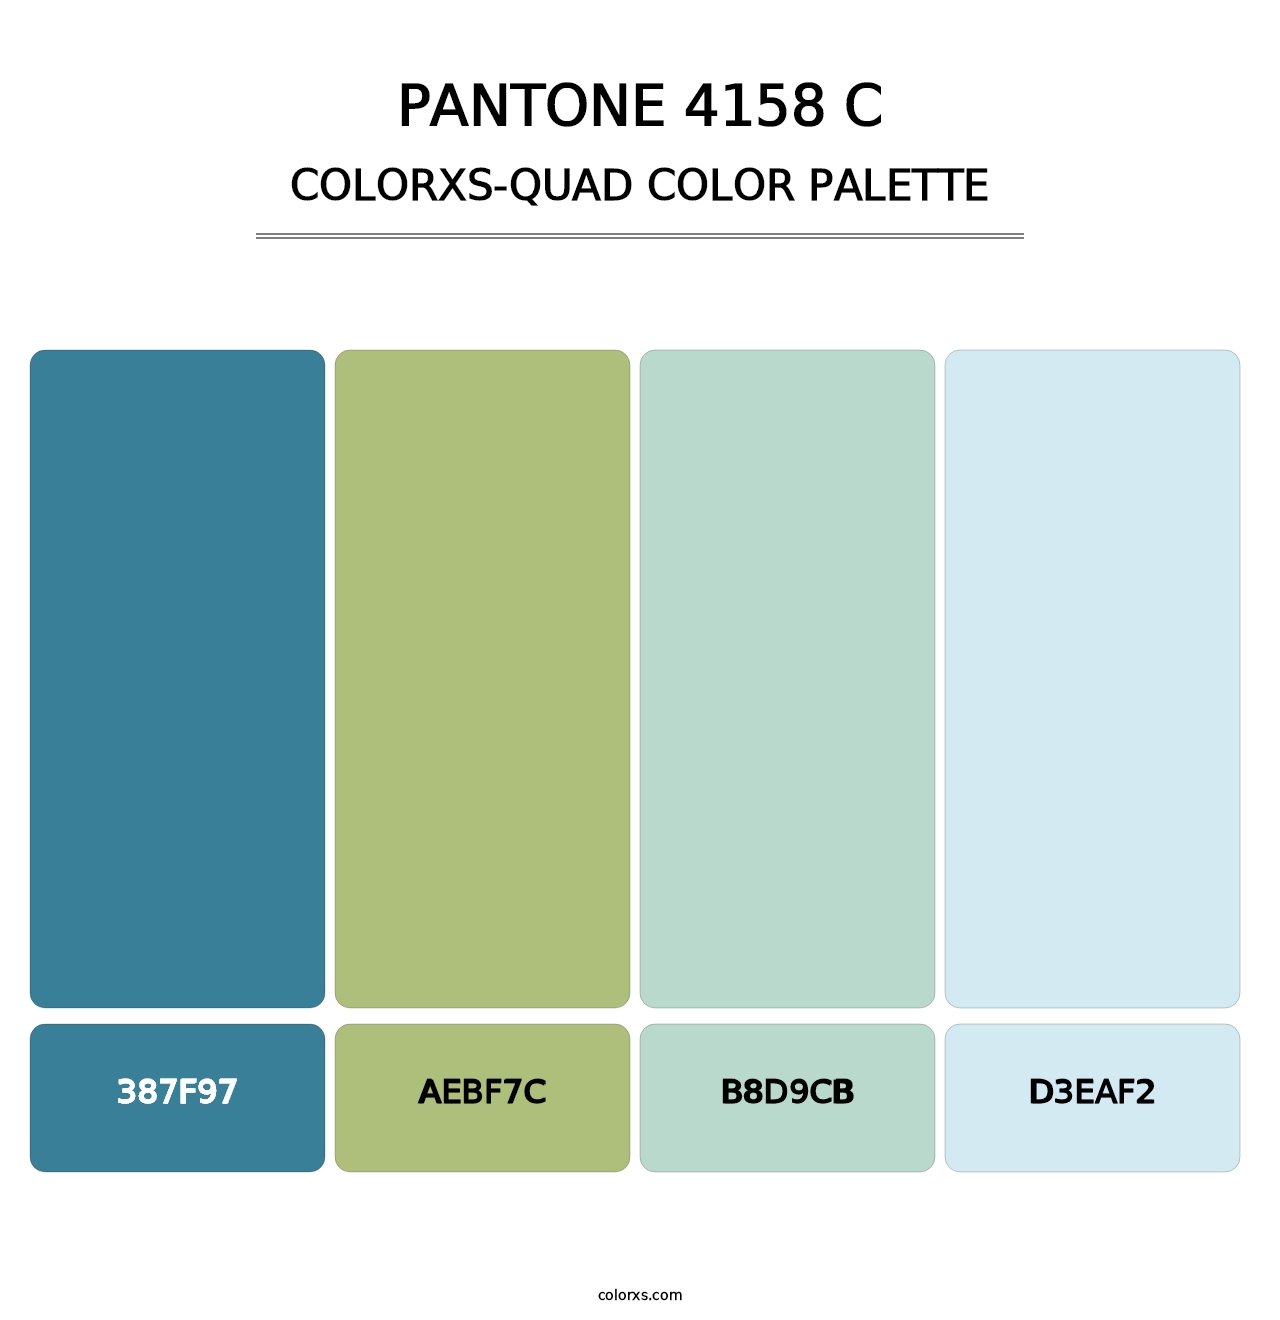 PANTONE 4158 C - Colorxs Quad Palette